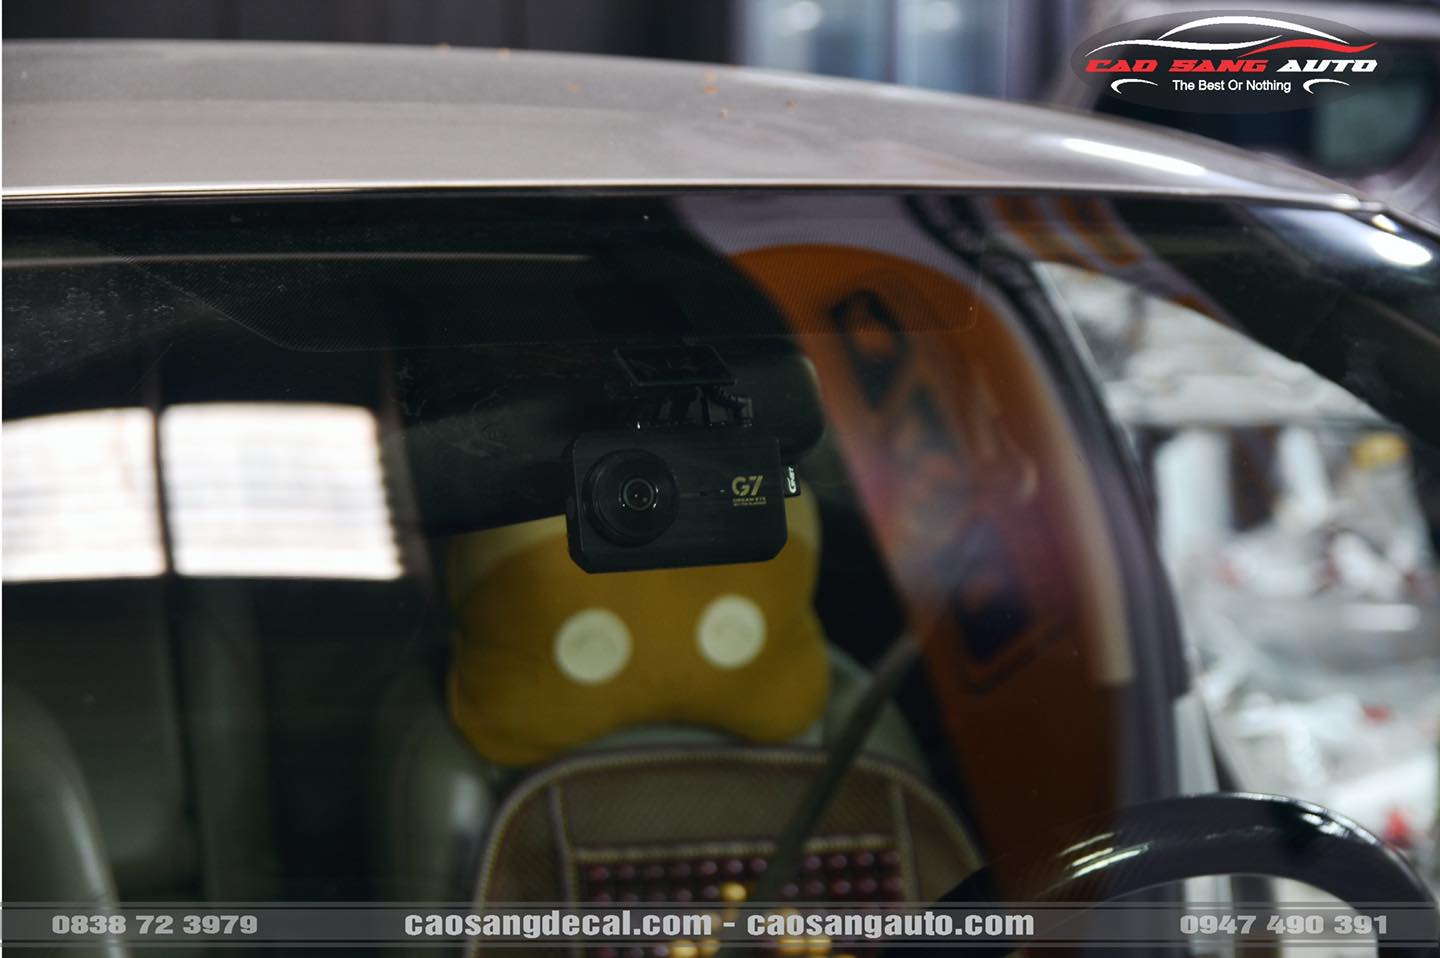 Vios trang bị camera hành trình ghi hình trước sau GNET G7 - Hỗ trợ lái xe an toàn